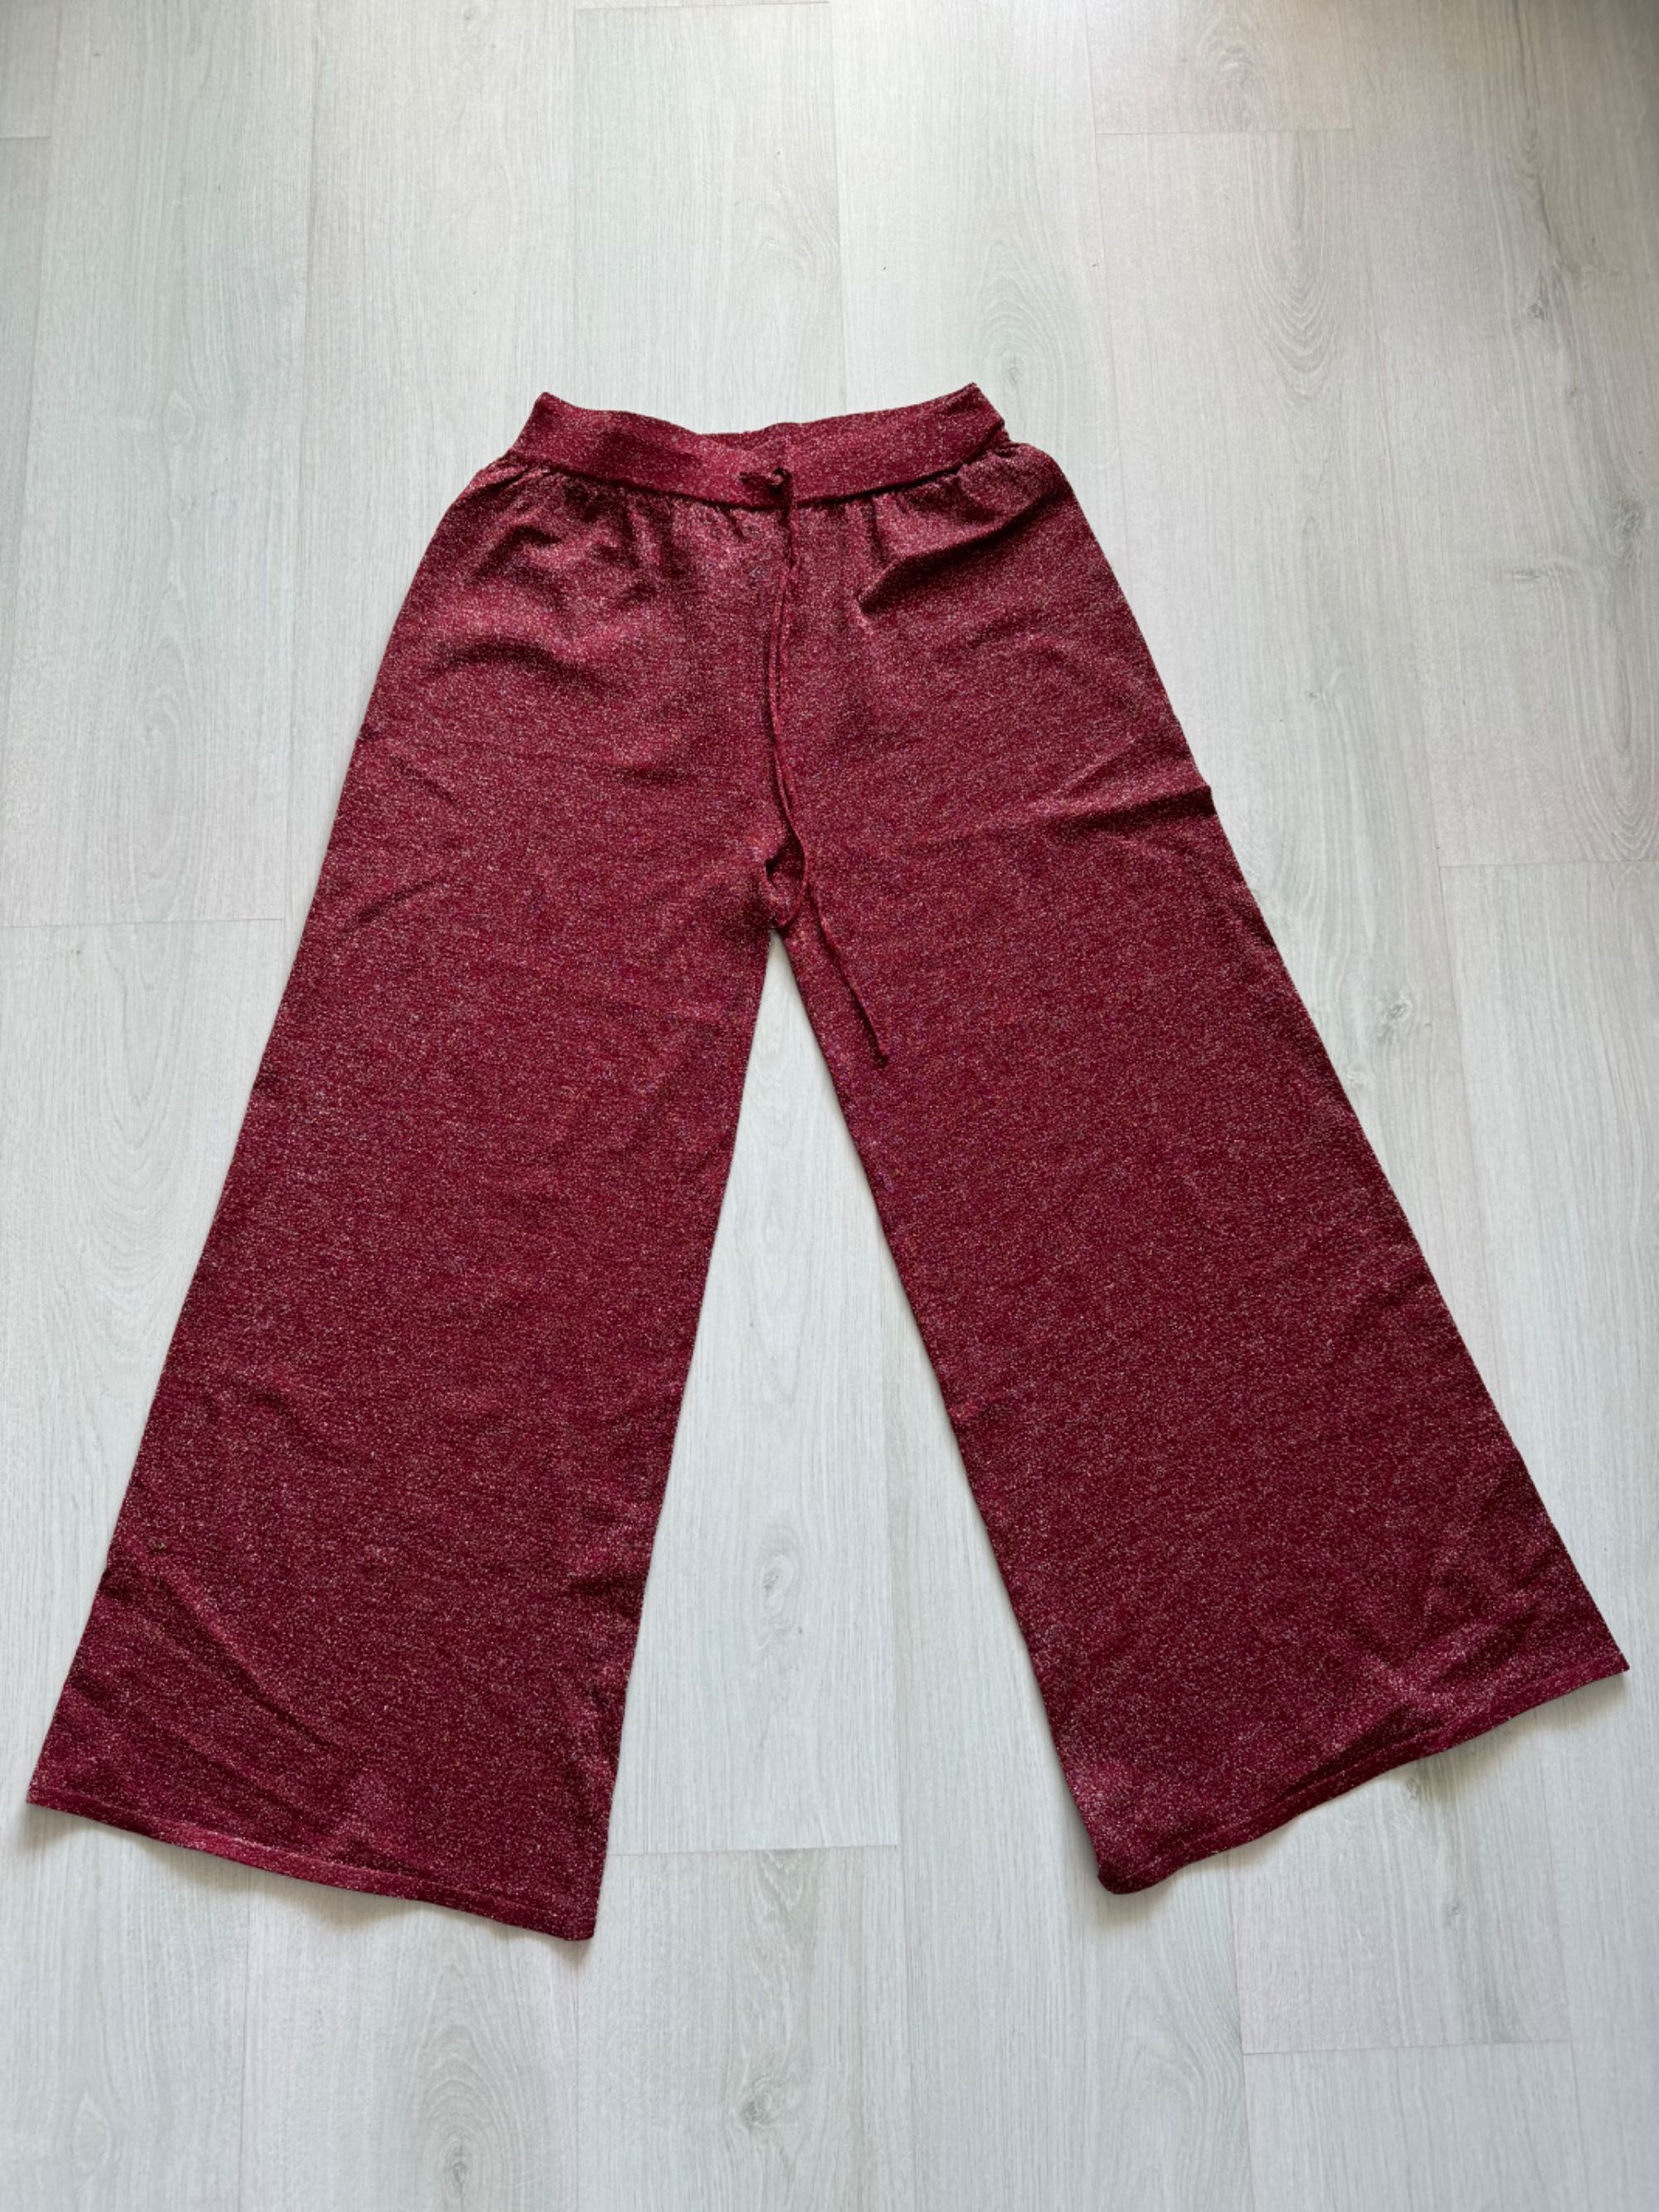 Pantaloni dama Mango MNG, mărimea M, roșu-cărămiziu cu sclipici